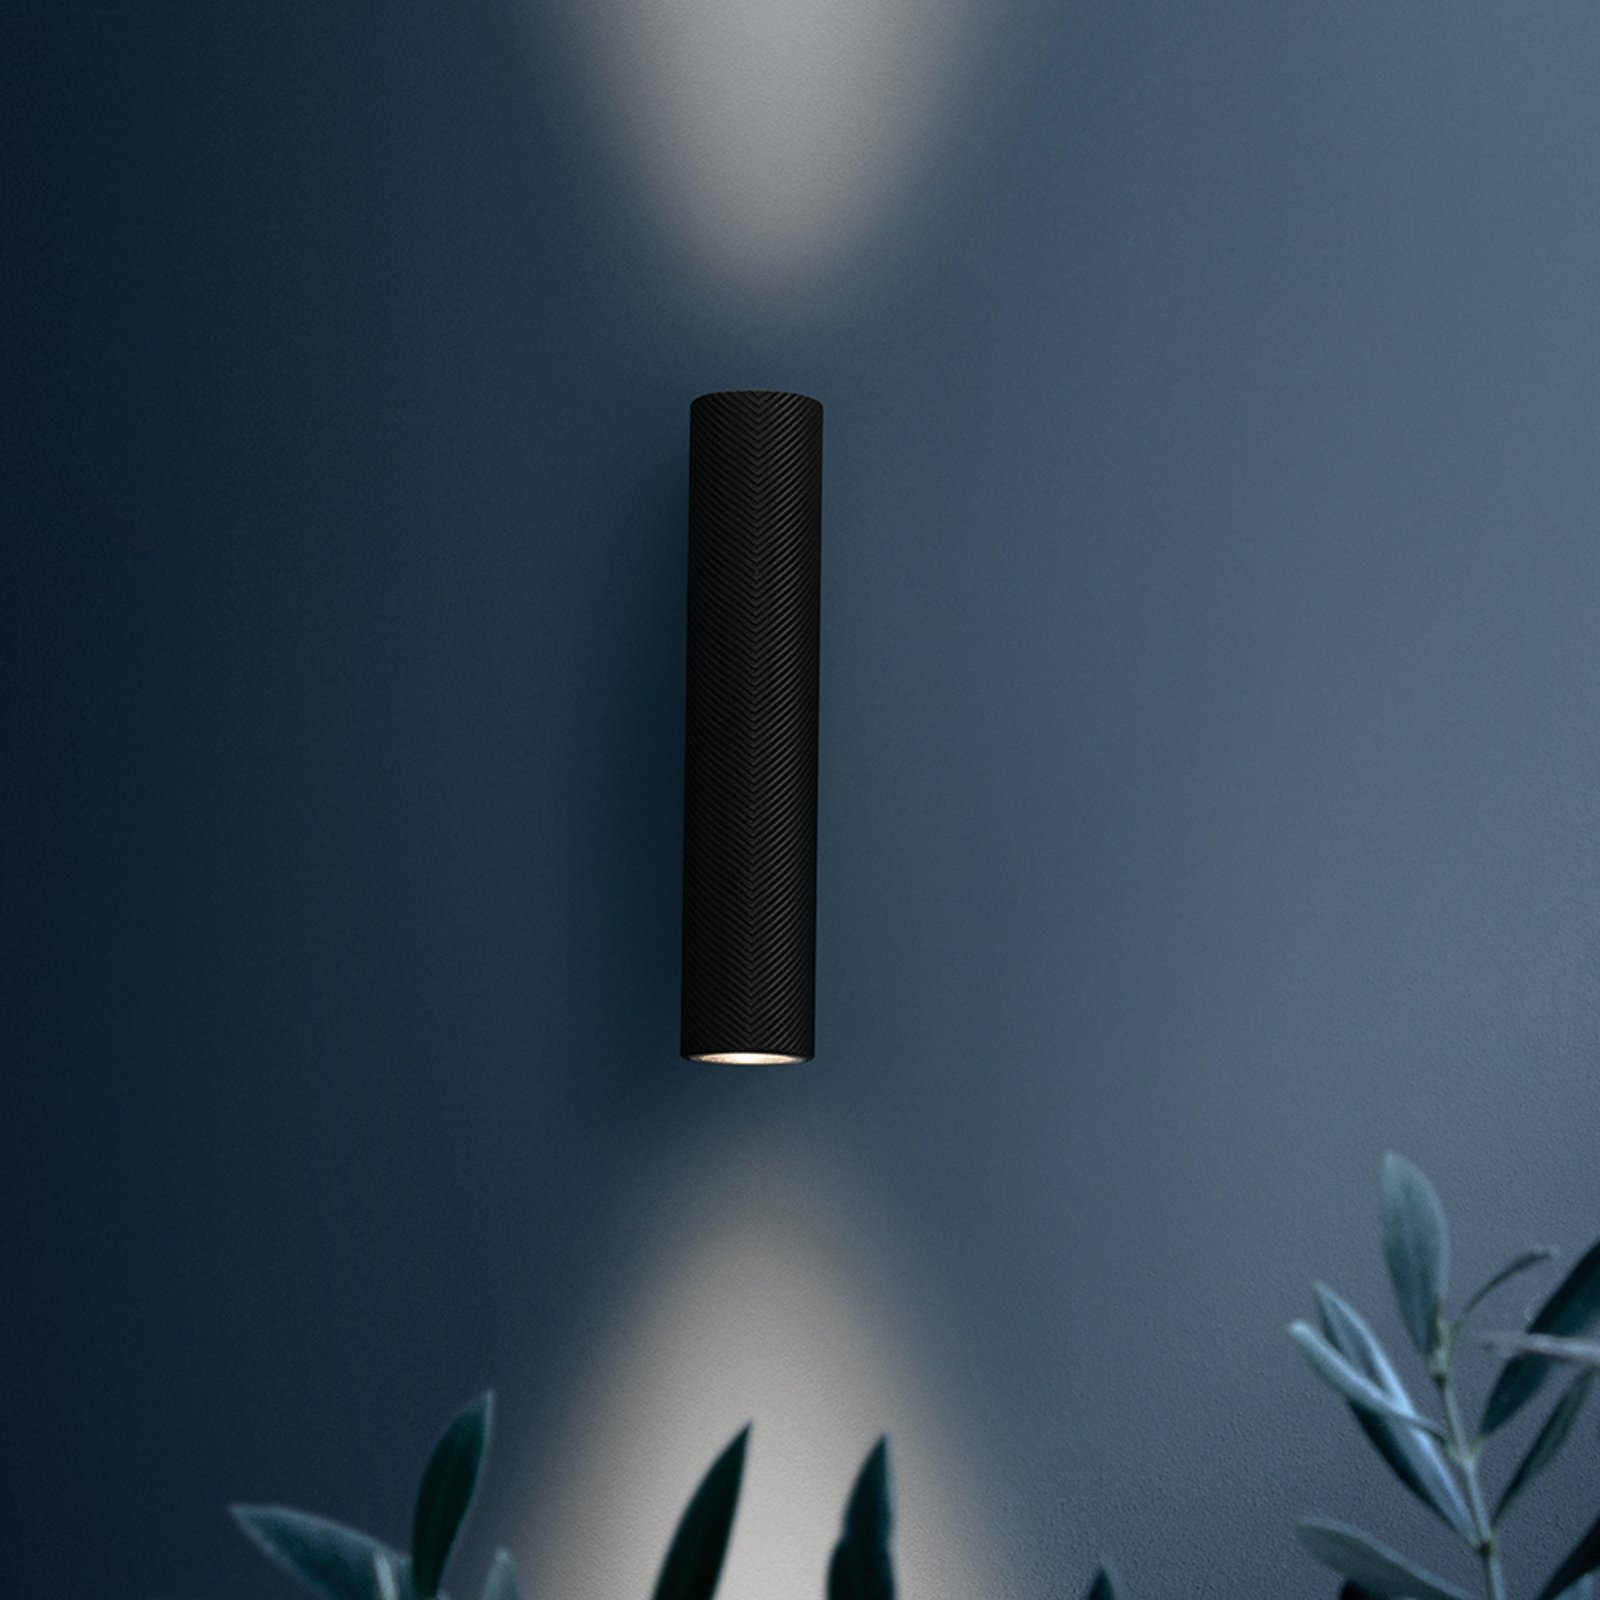 Venkovní nástěnné svítidlo FLOS Flauta Spiga 1, 2 700 K, černé